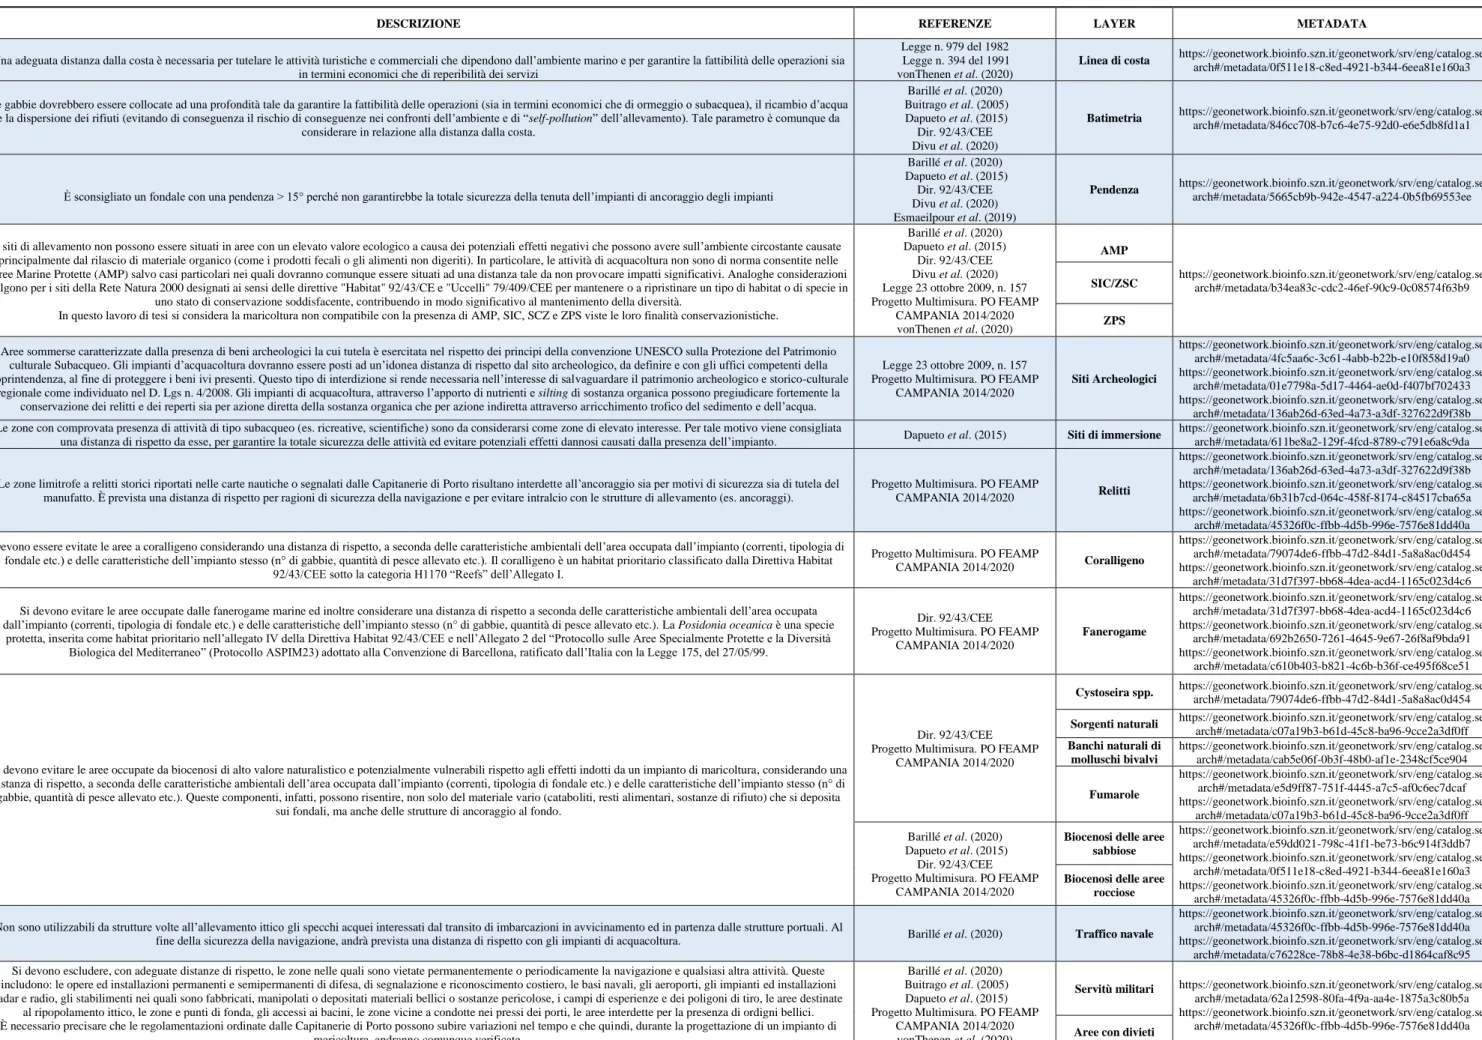 Tabella 1 - Tutti i criteri e i rispettivi layers utilizzati in questa tesi, con descrizione e link alle relative schede descrittive contenenti fonti e referenze